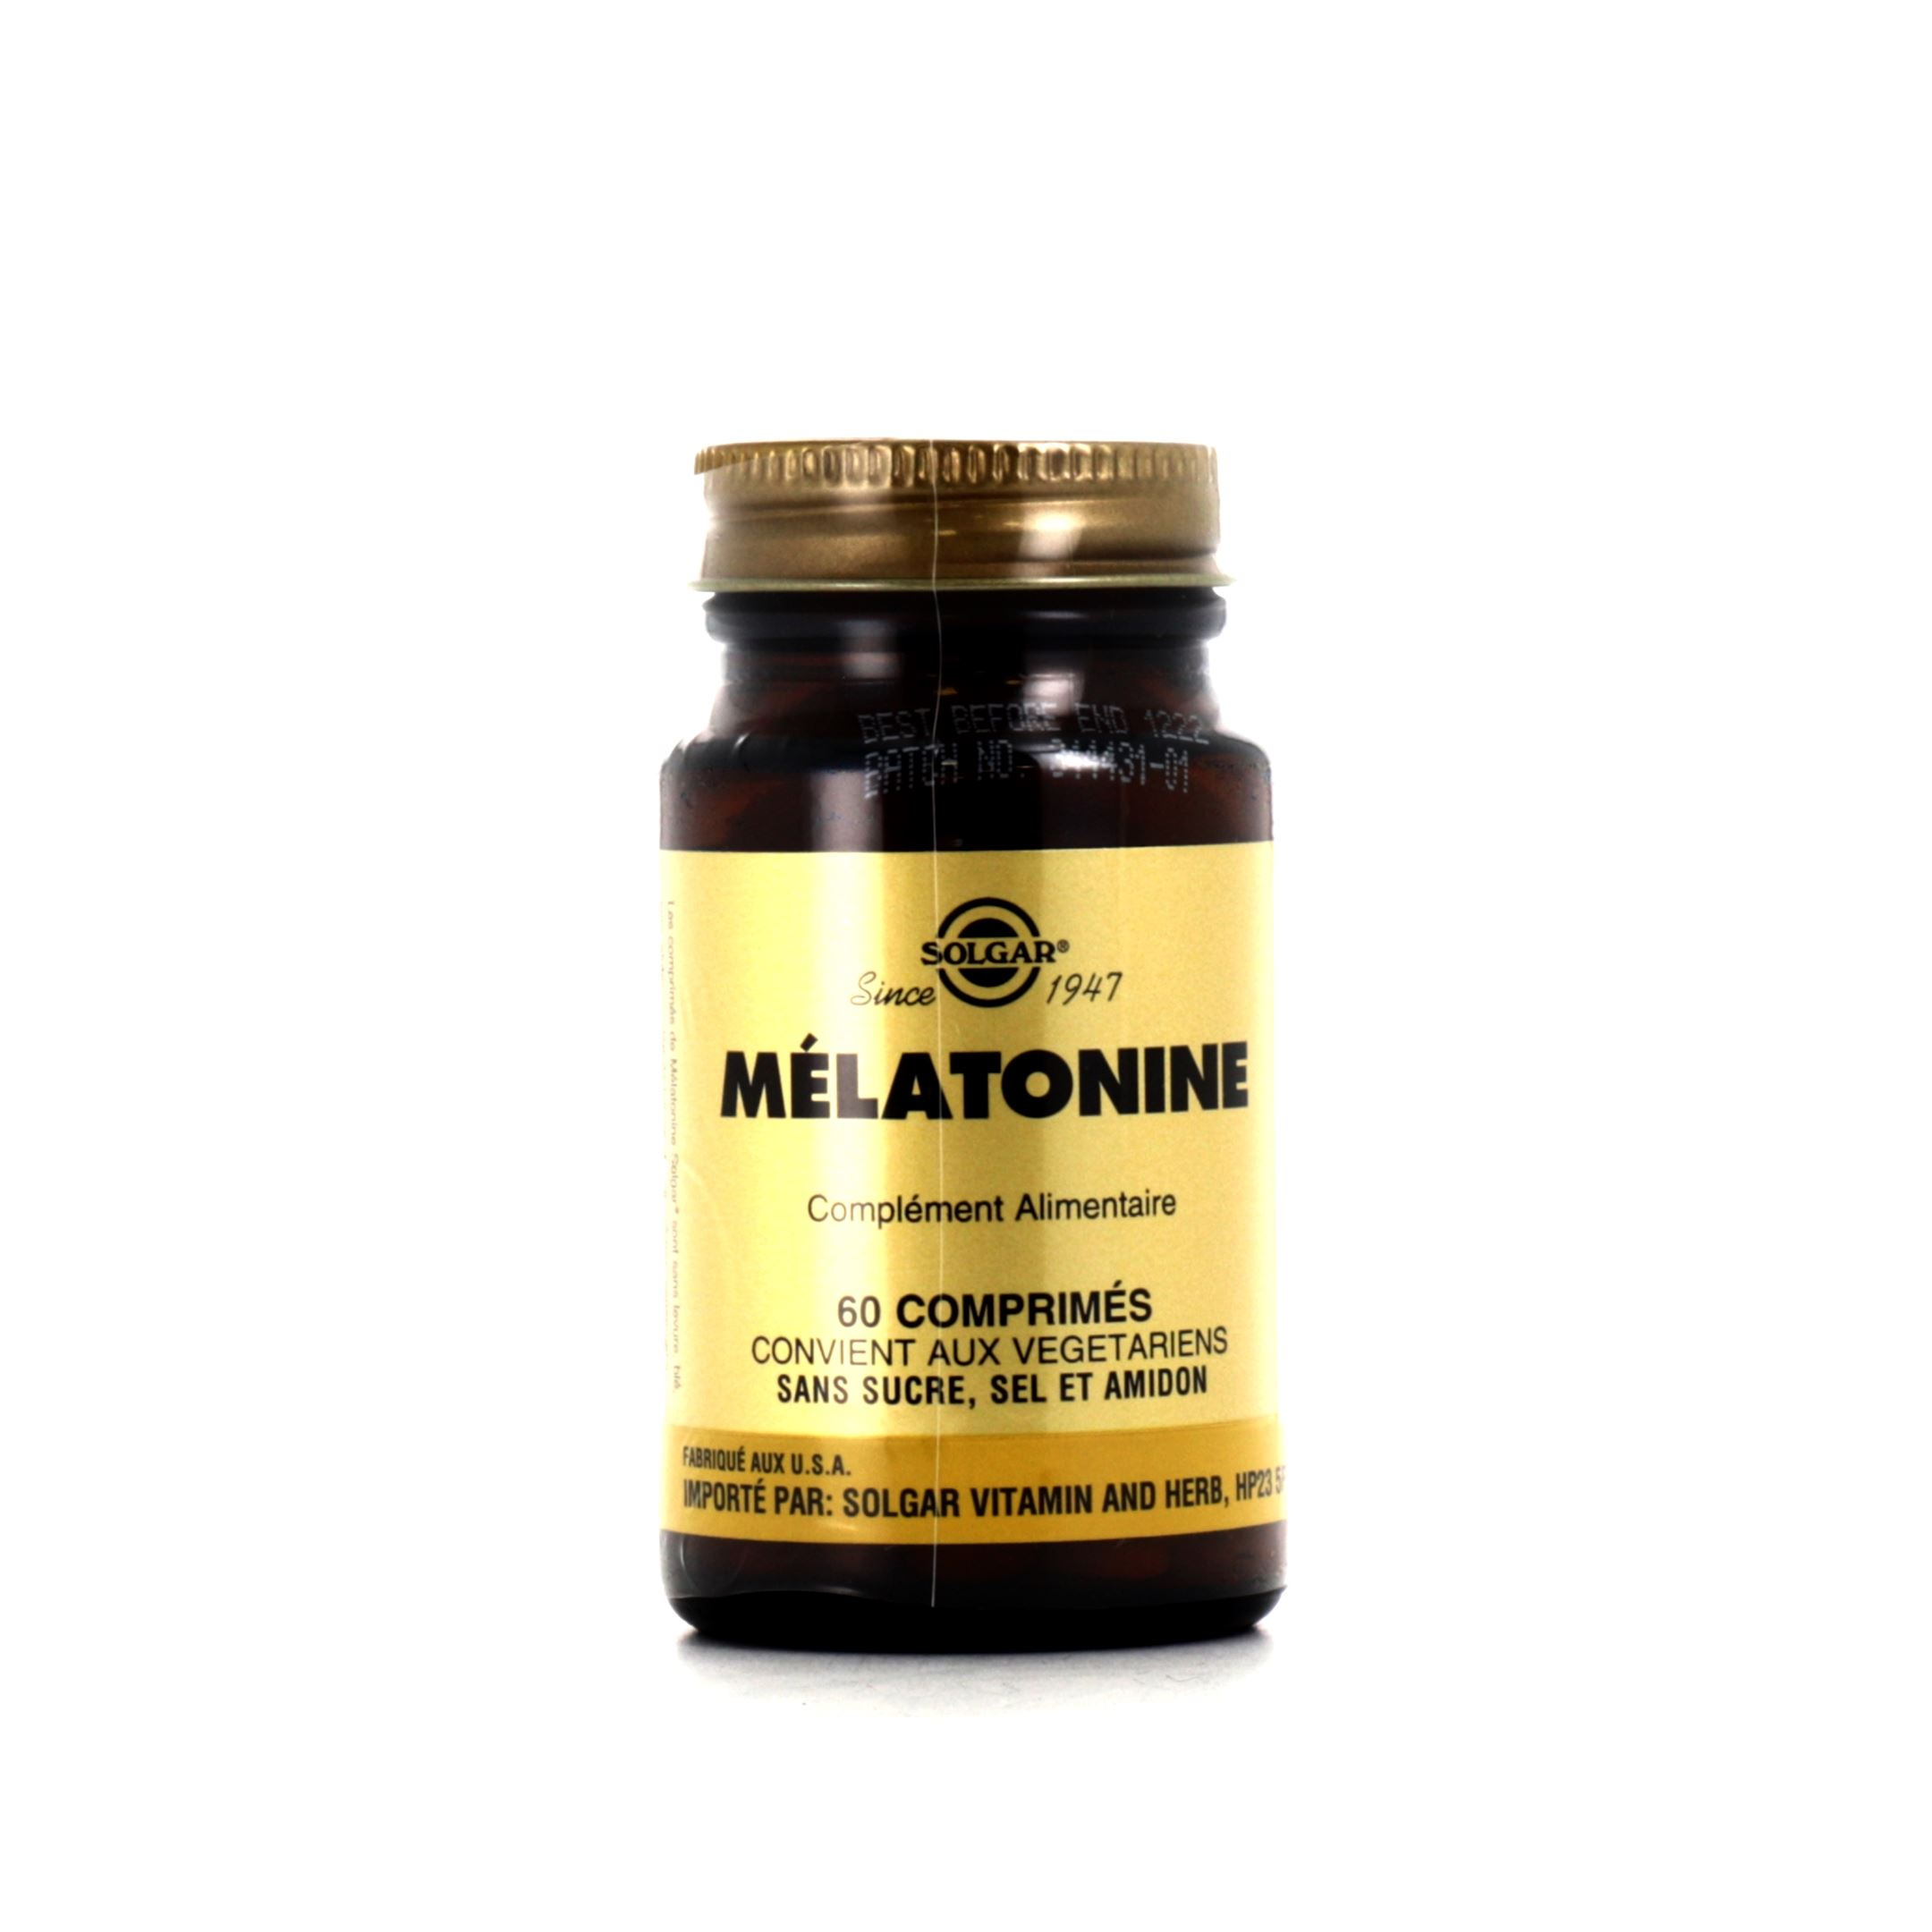 Растительный мелатонин отзывы. Мелатонин Солгар. Мелатонин от Solgar. Мелатонин Турция витамины. Мелатонин фото упаковки.